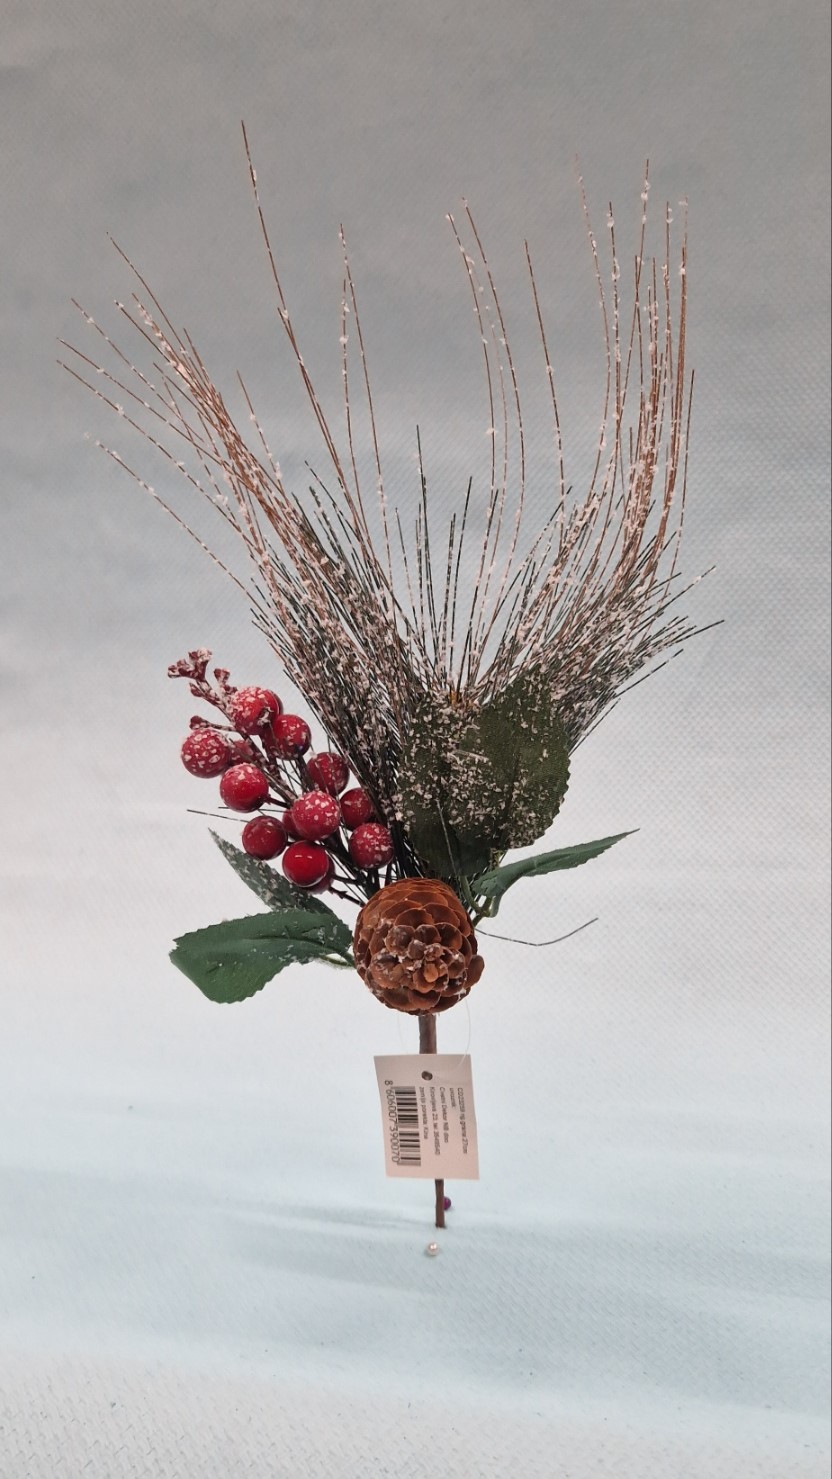 novogodišnja ukrasna grana sa travkama, šišarkom i crvenim bobicama